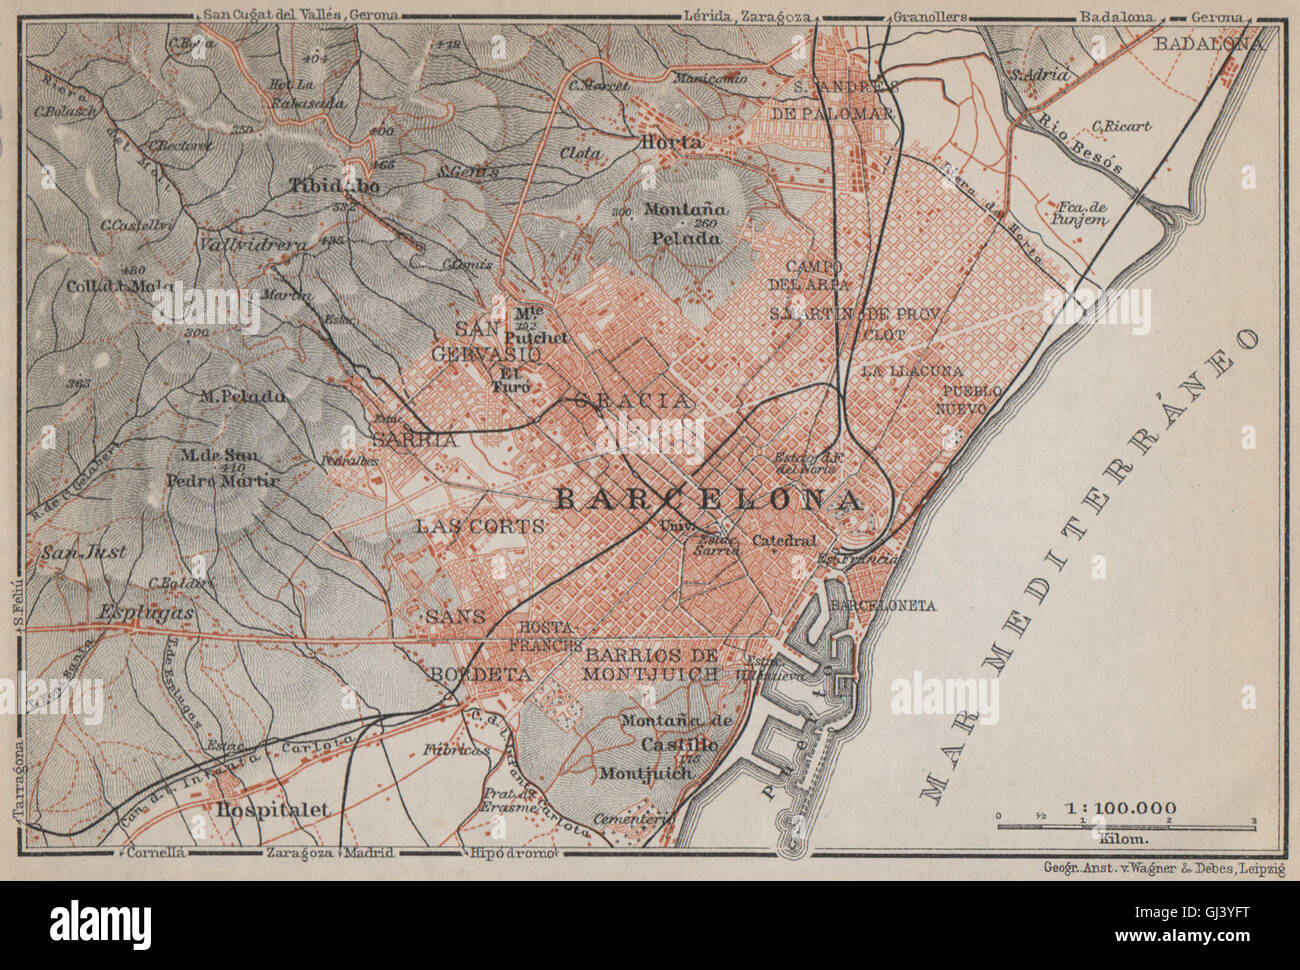 BARCELONA city plan & environs. Spain España mapa. BAEDEKER, 1913 Stock Photo